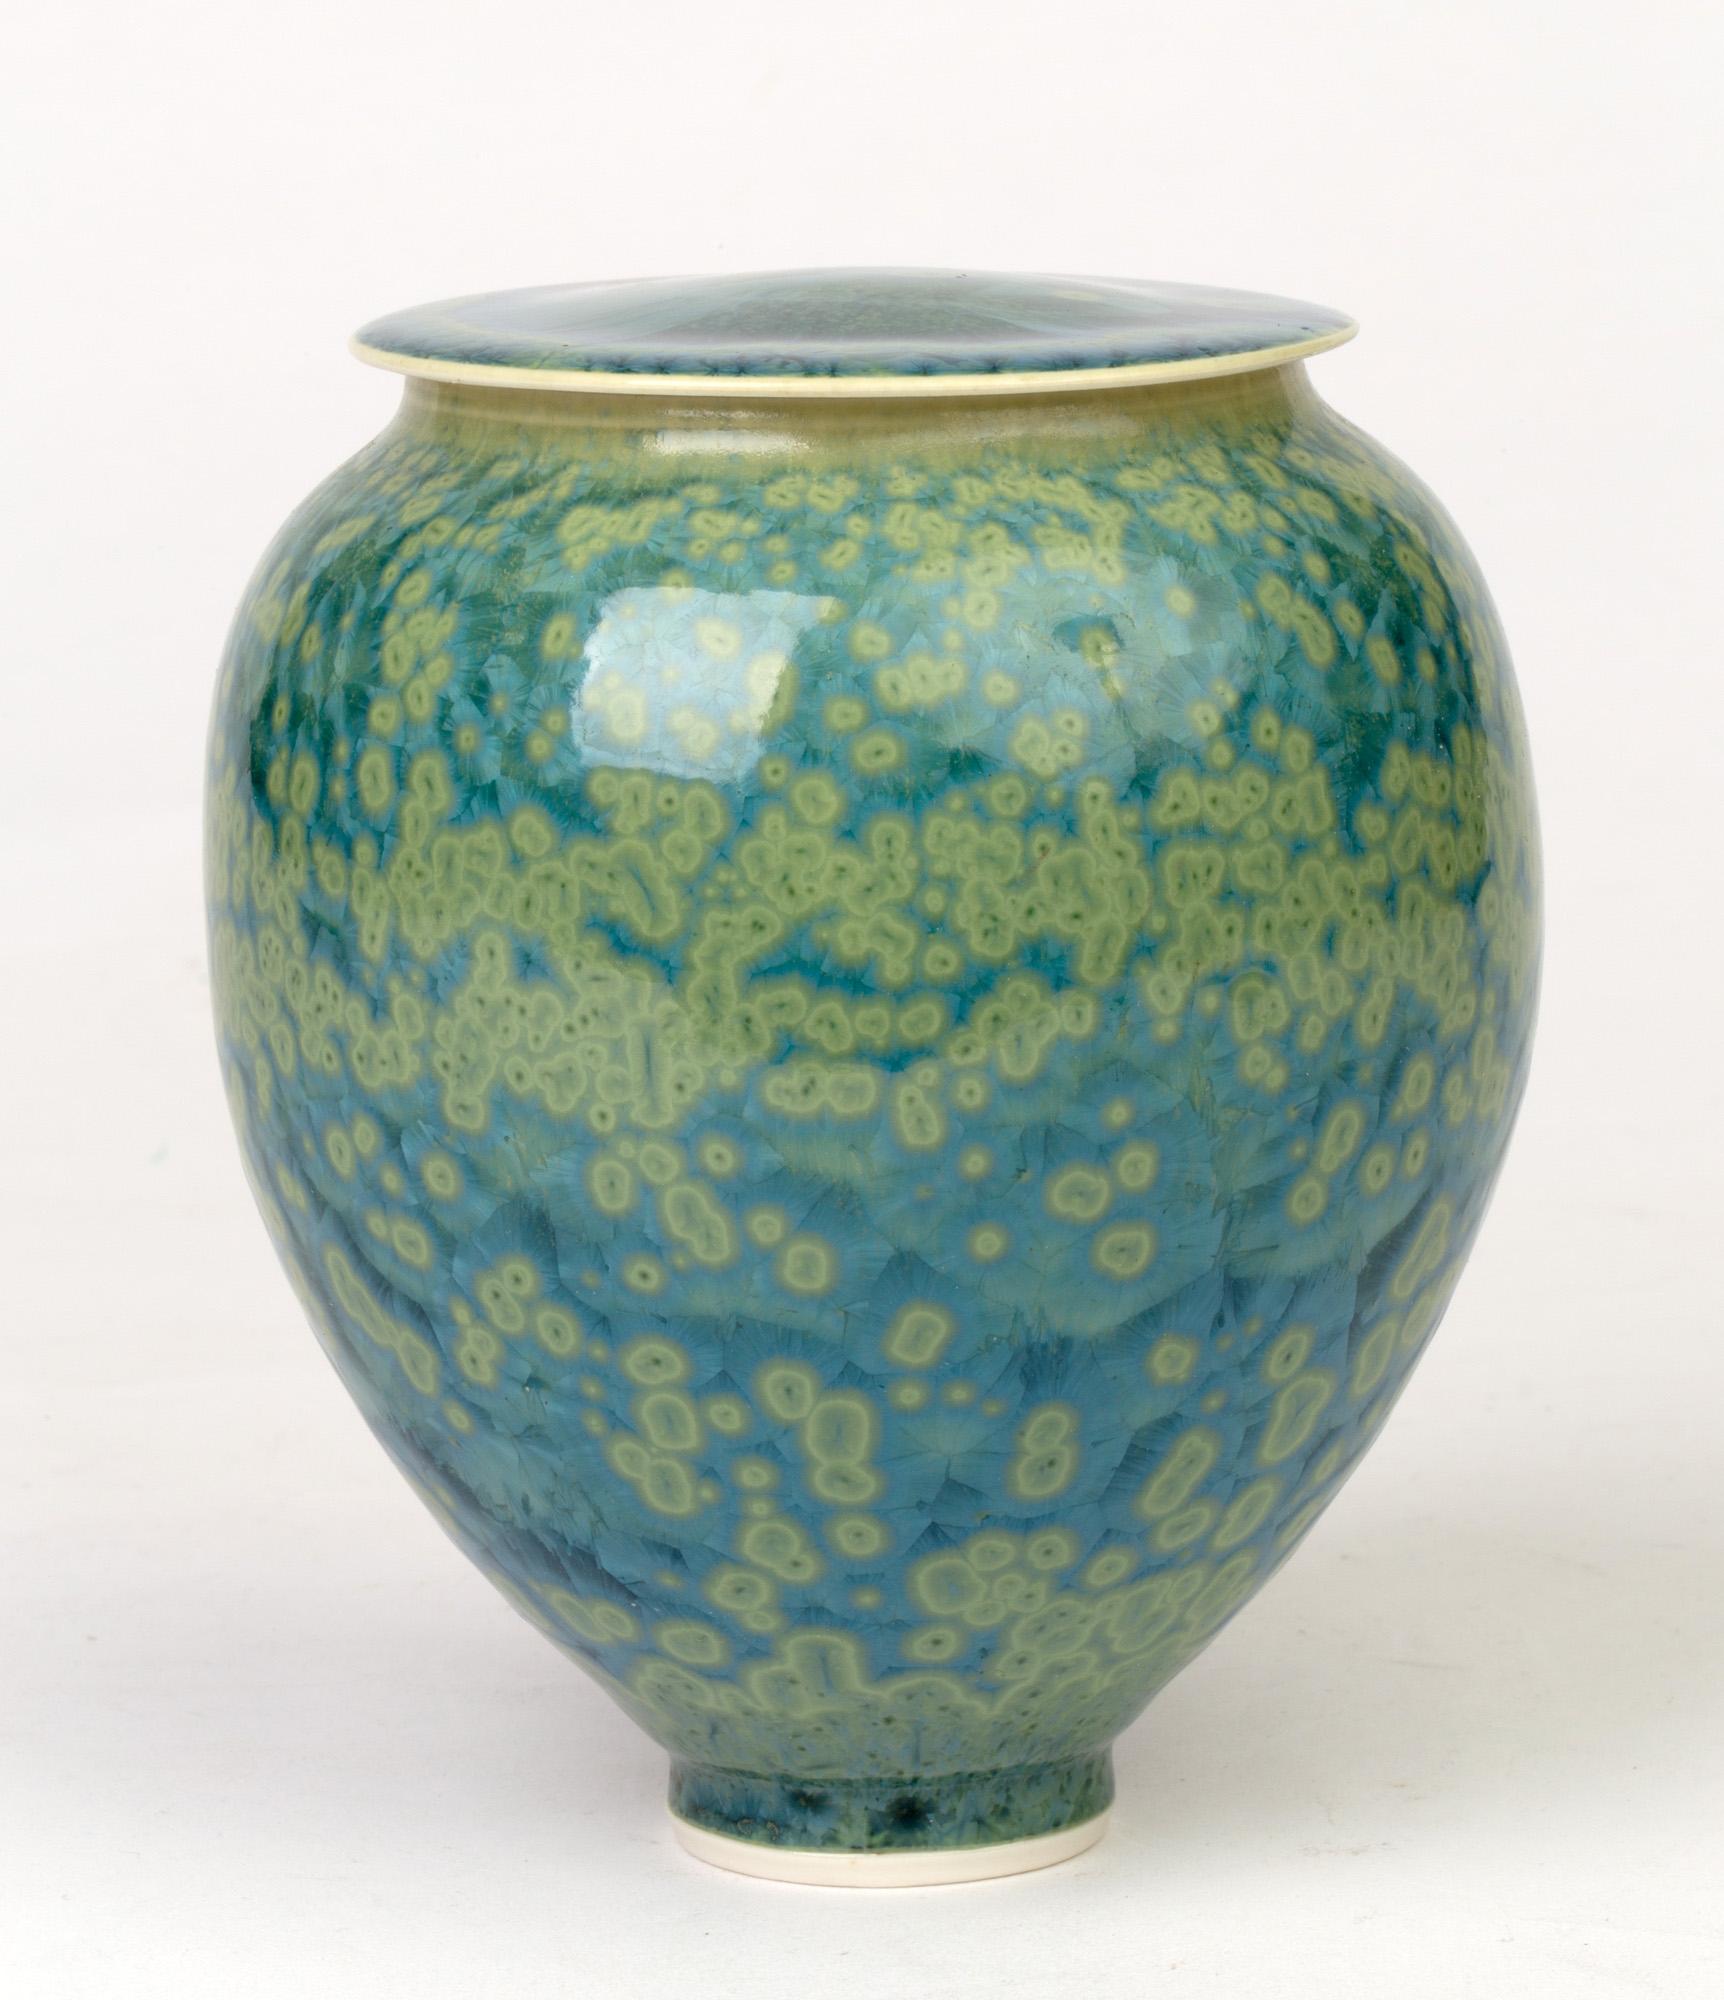 Hand-Crafted Studio Pottery Crystalline Glazed Porcelain Lidded Vessel